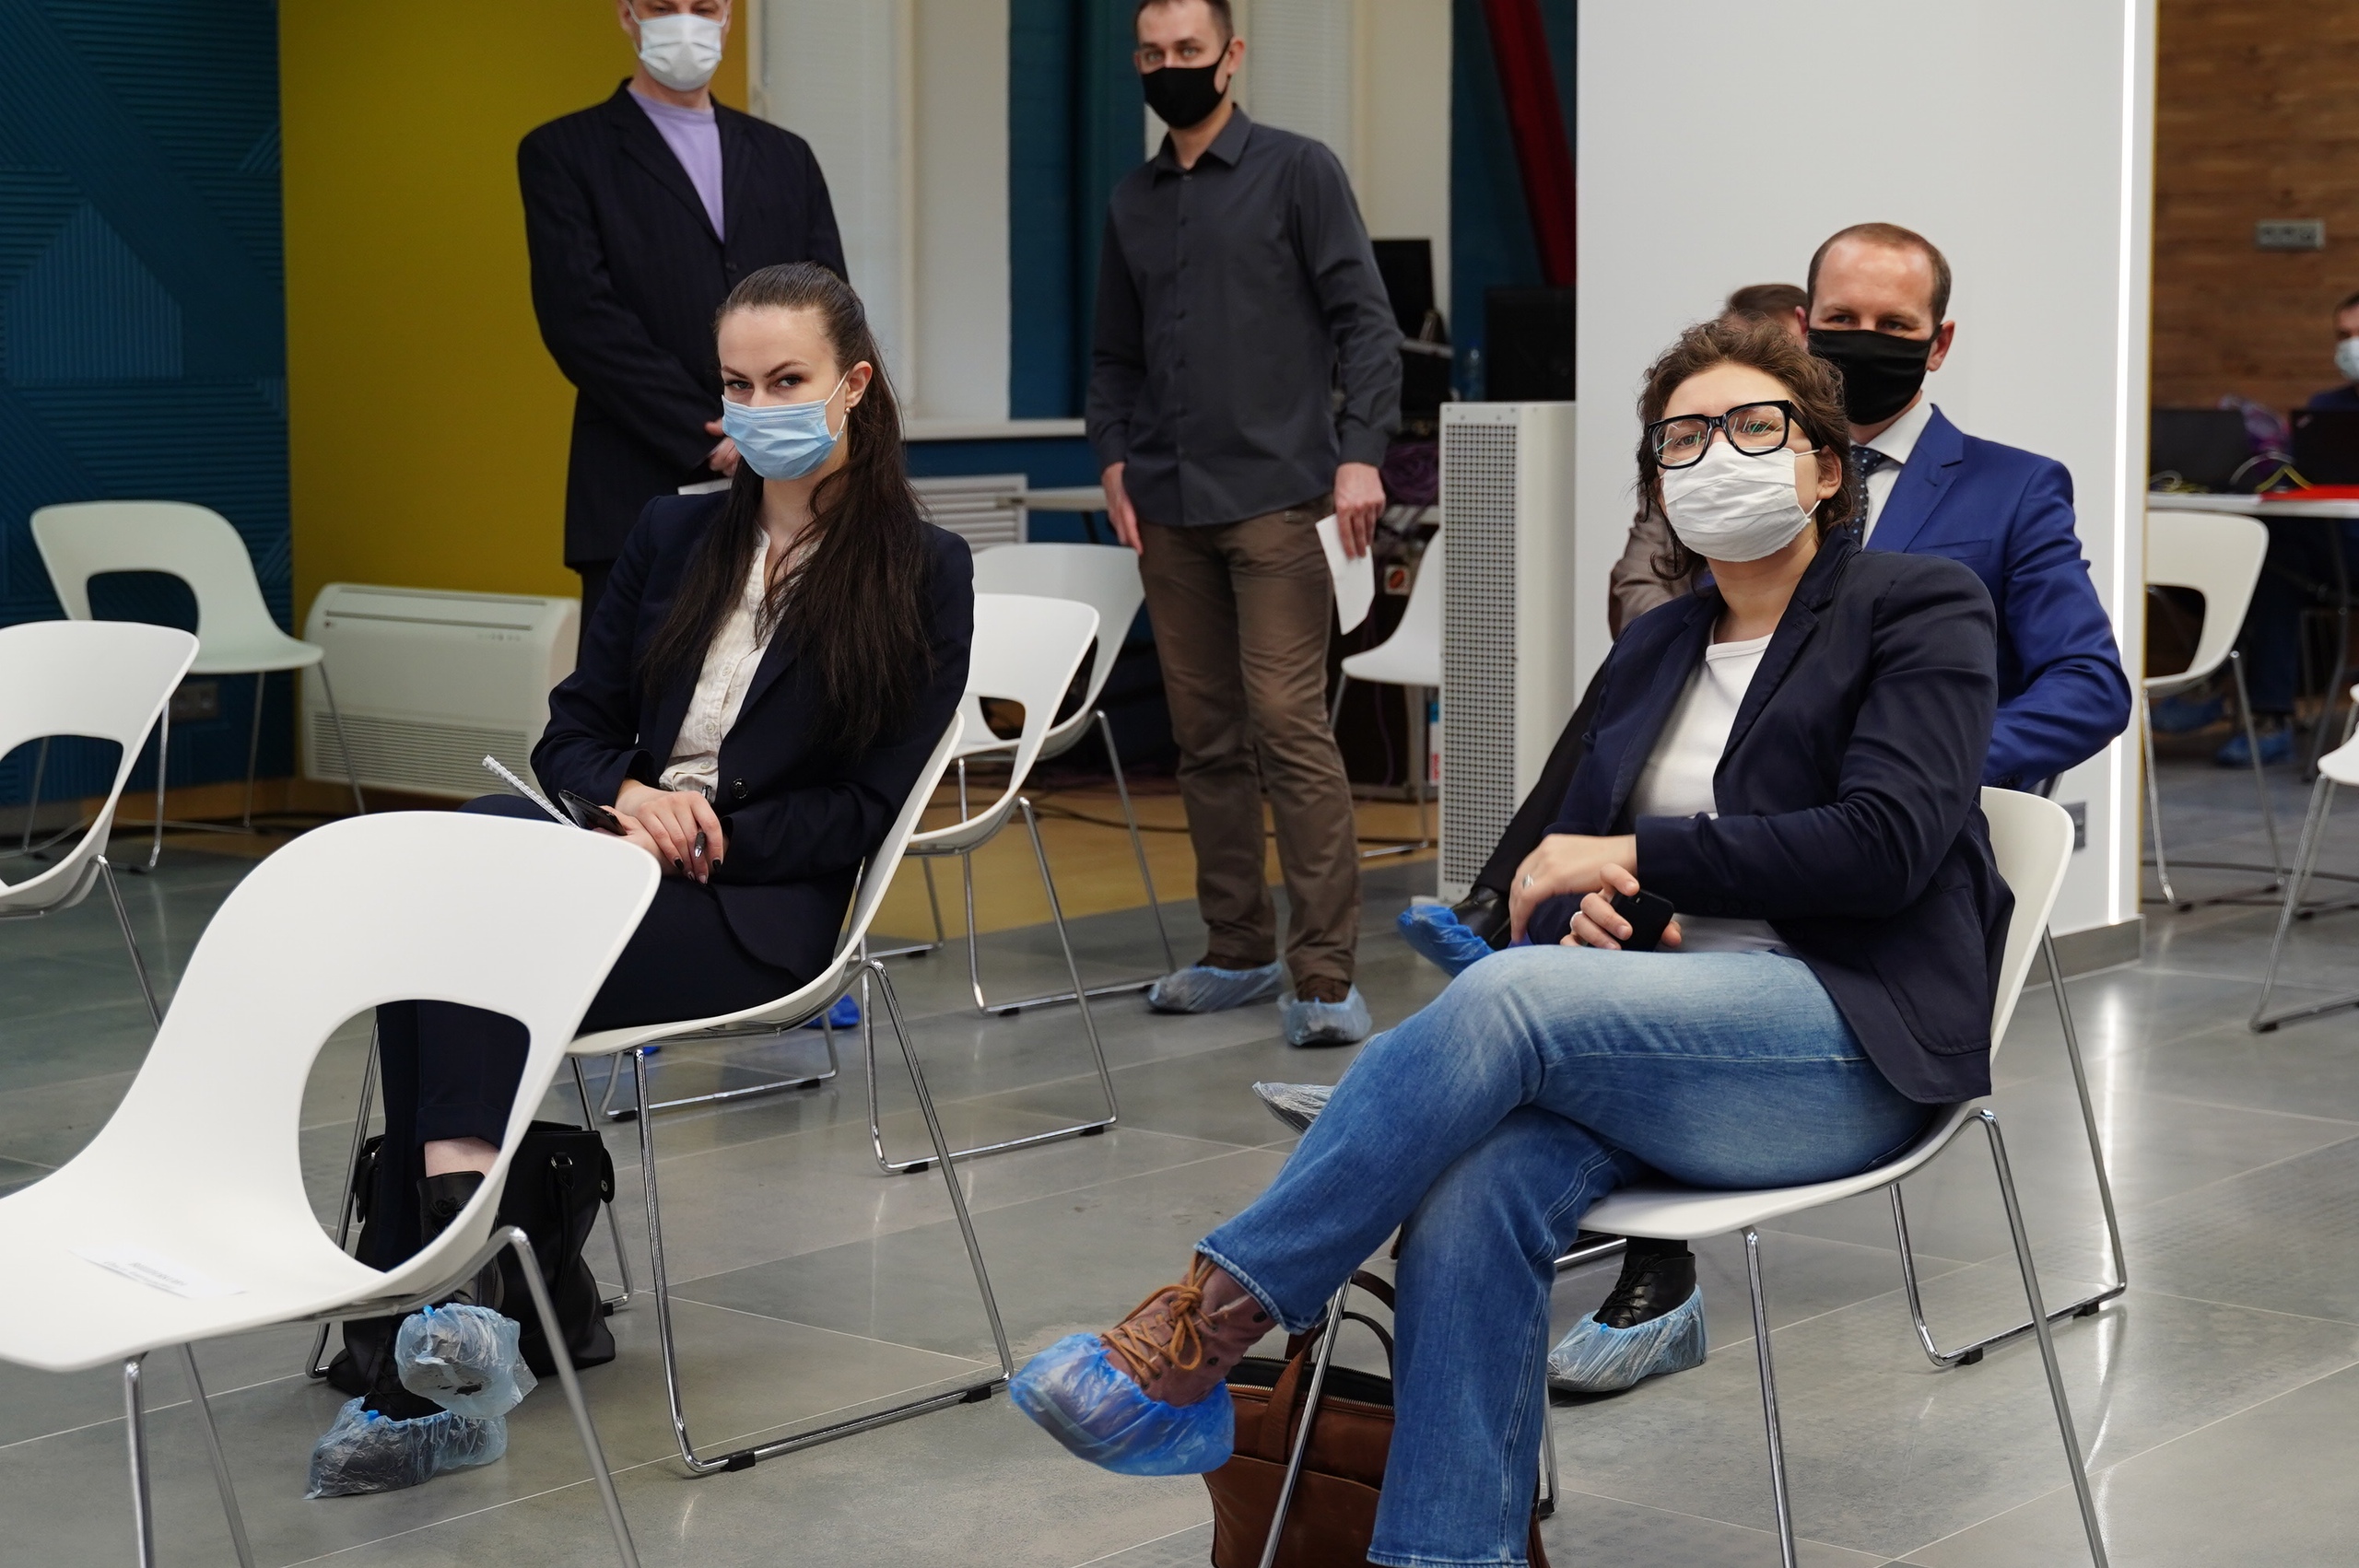 Встречали по маске: в чём тверские журналисты пришли на встречу с губернатором